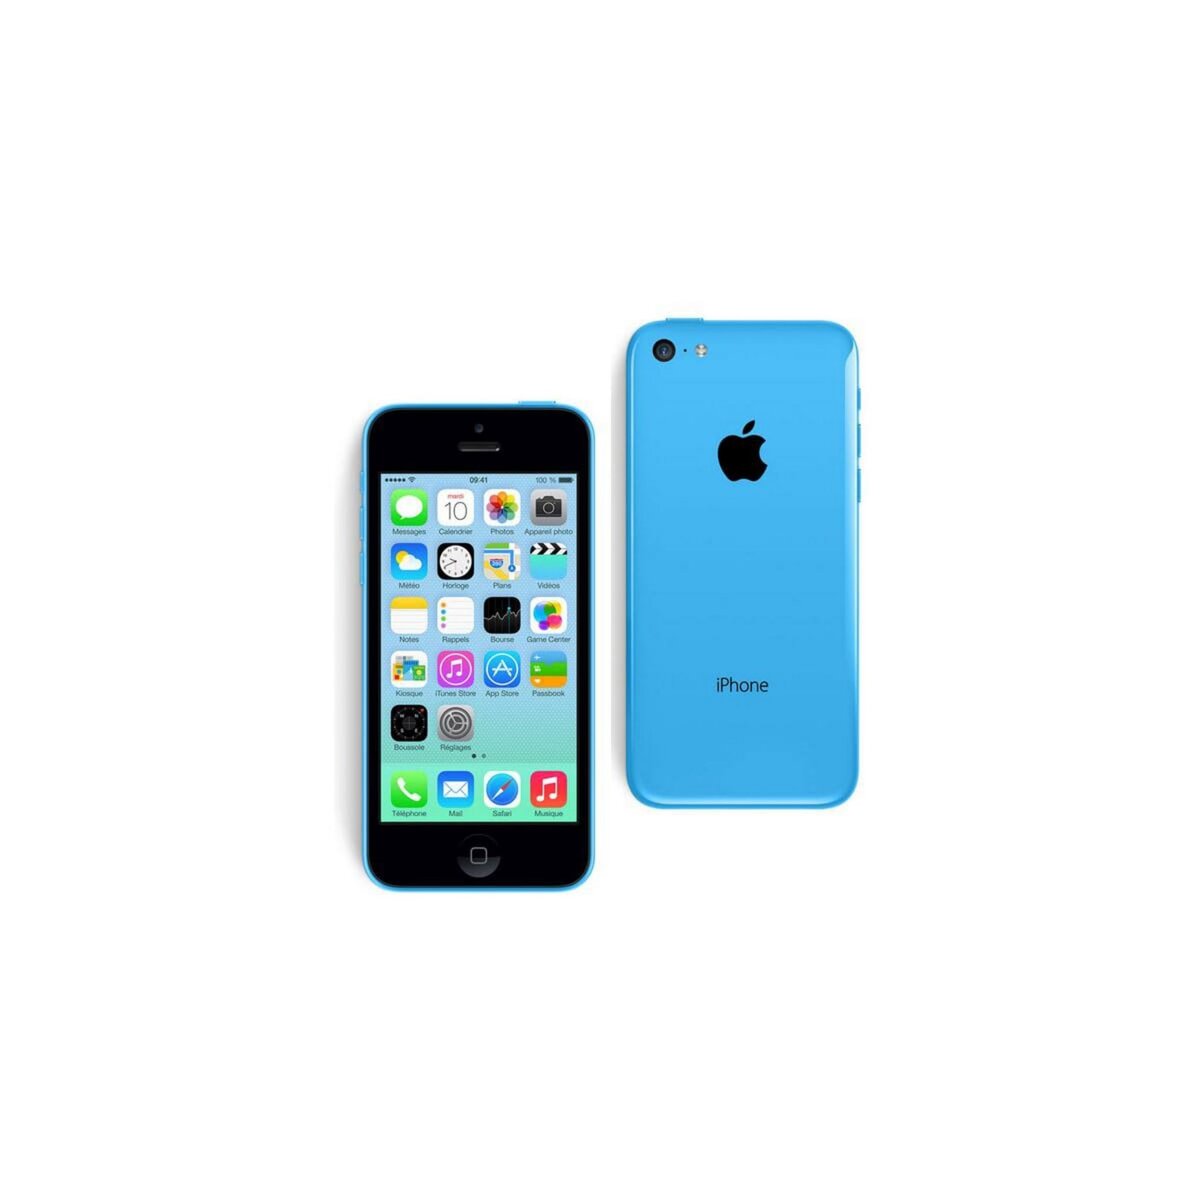 Apple iPhone 5C &ndash; Bleu - Reconditionné Lagoona - Grade B - 32 Go